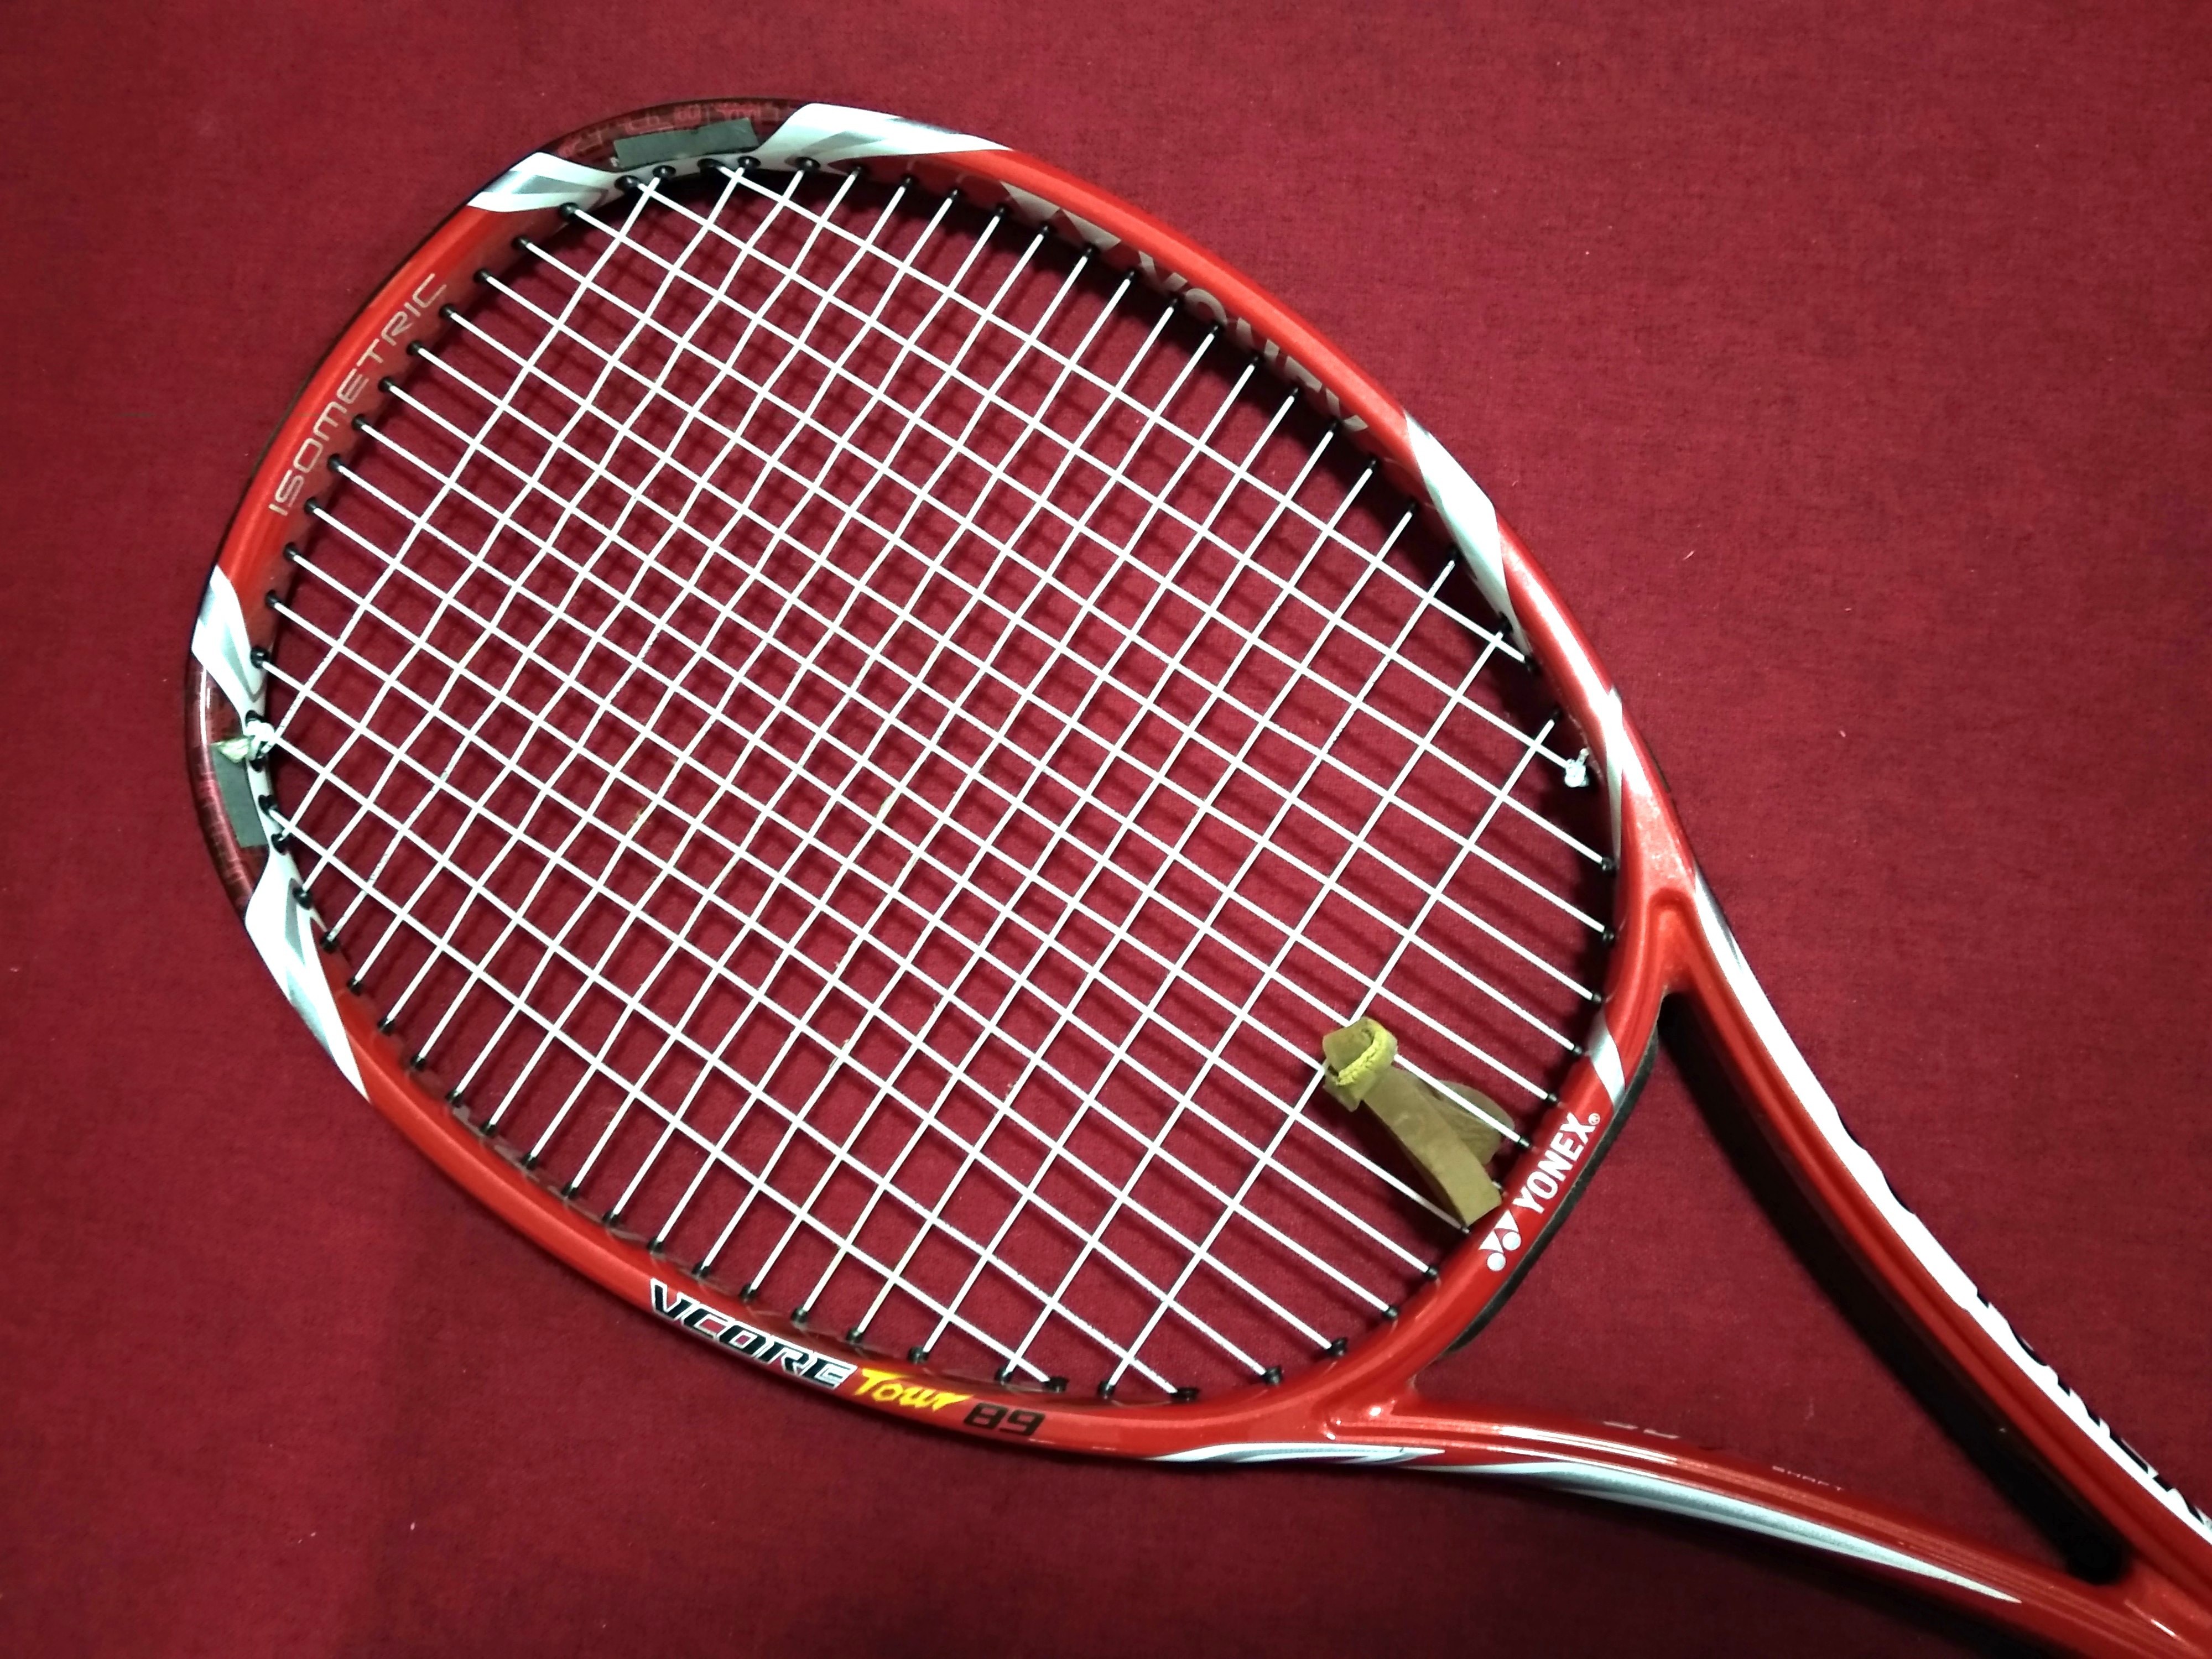 Yonex Vcore Tour 89 Tennis Racket